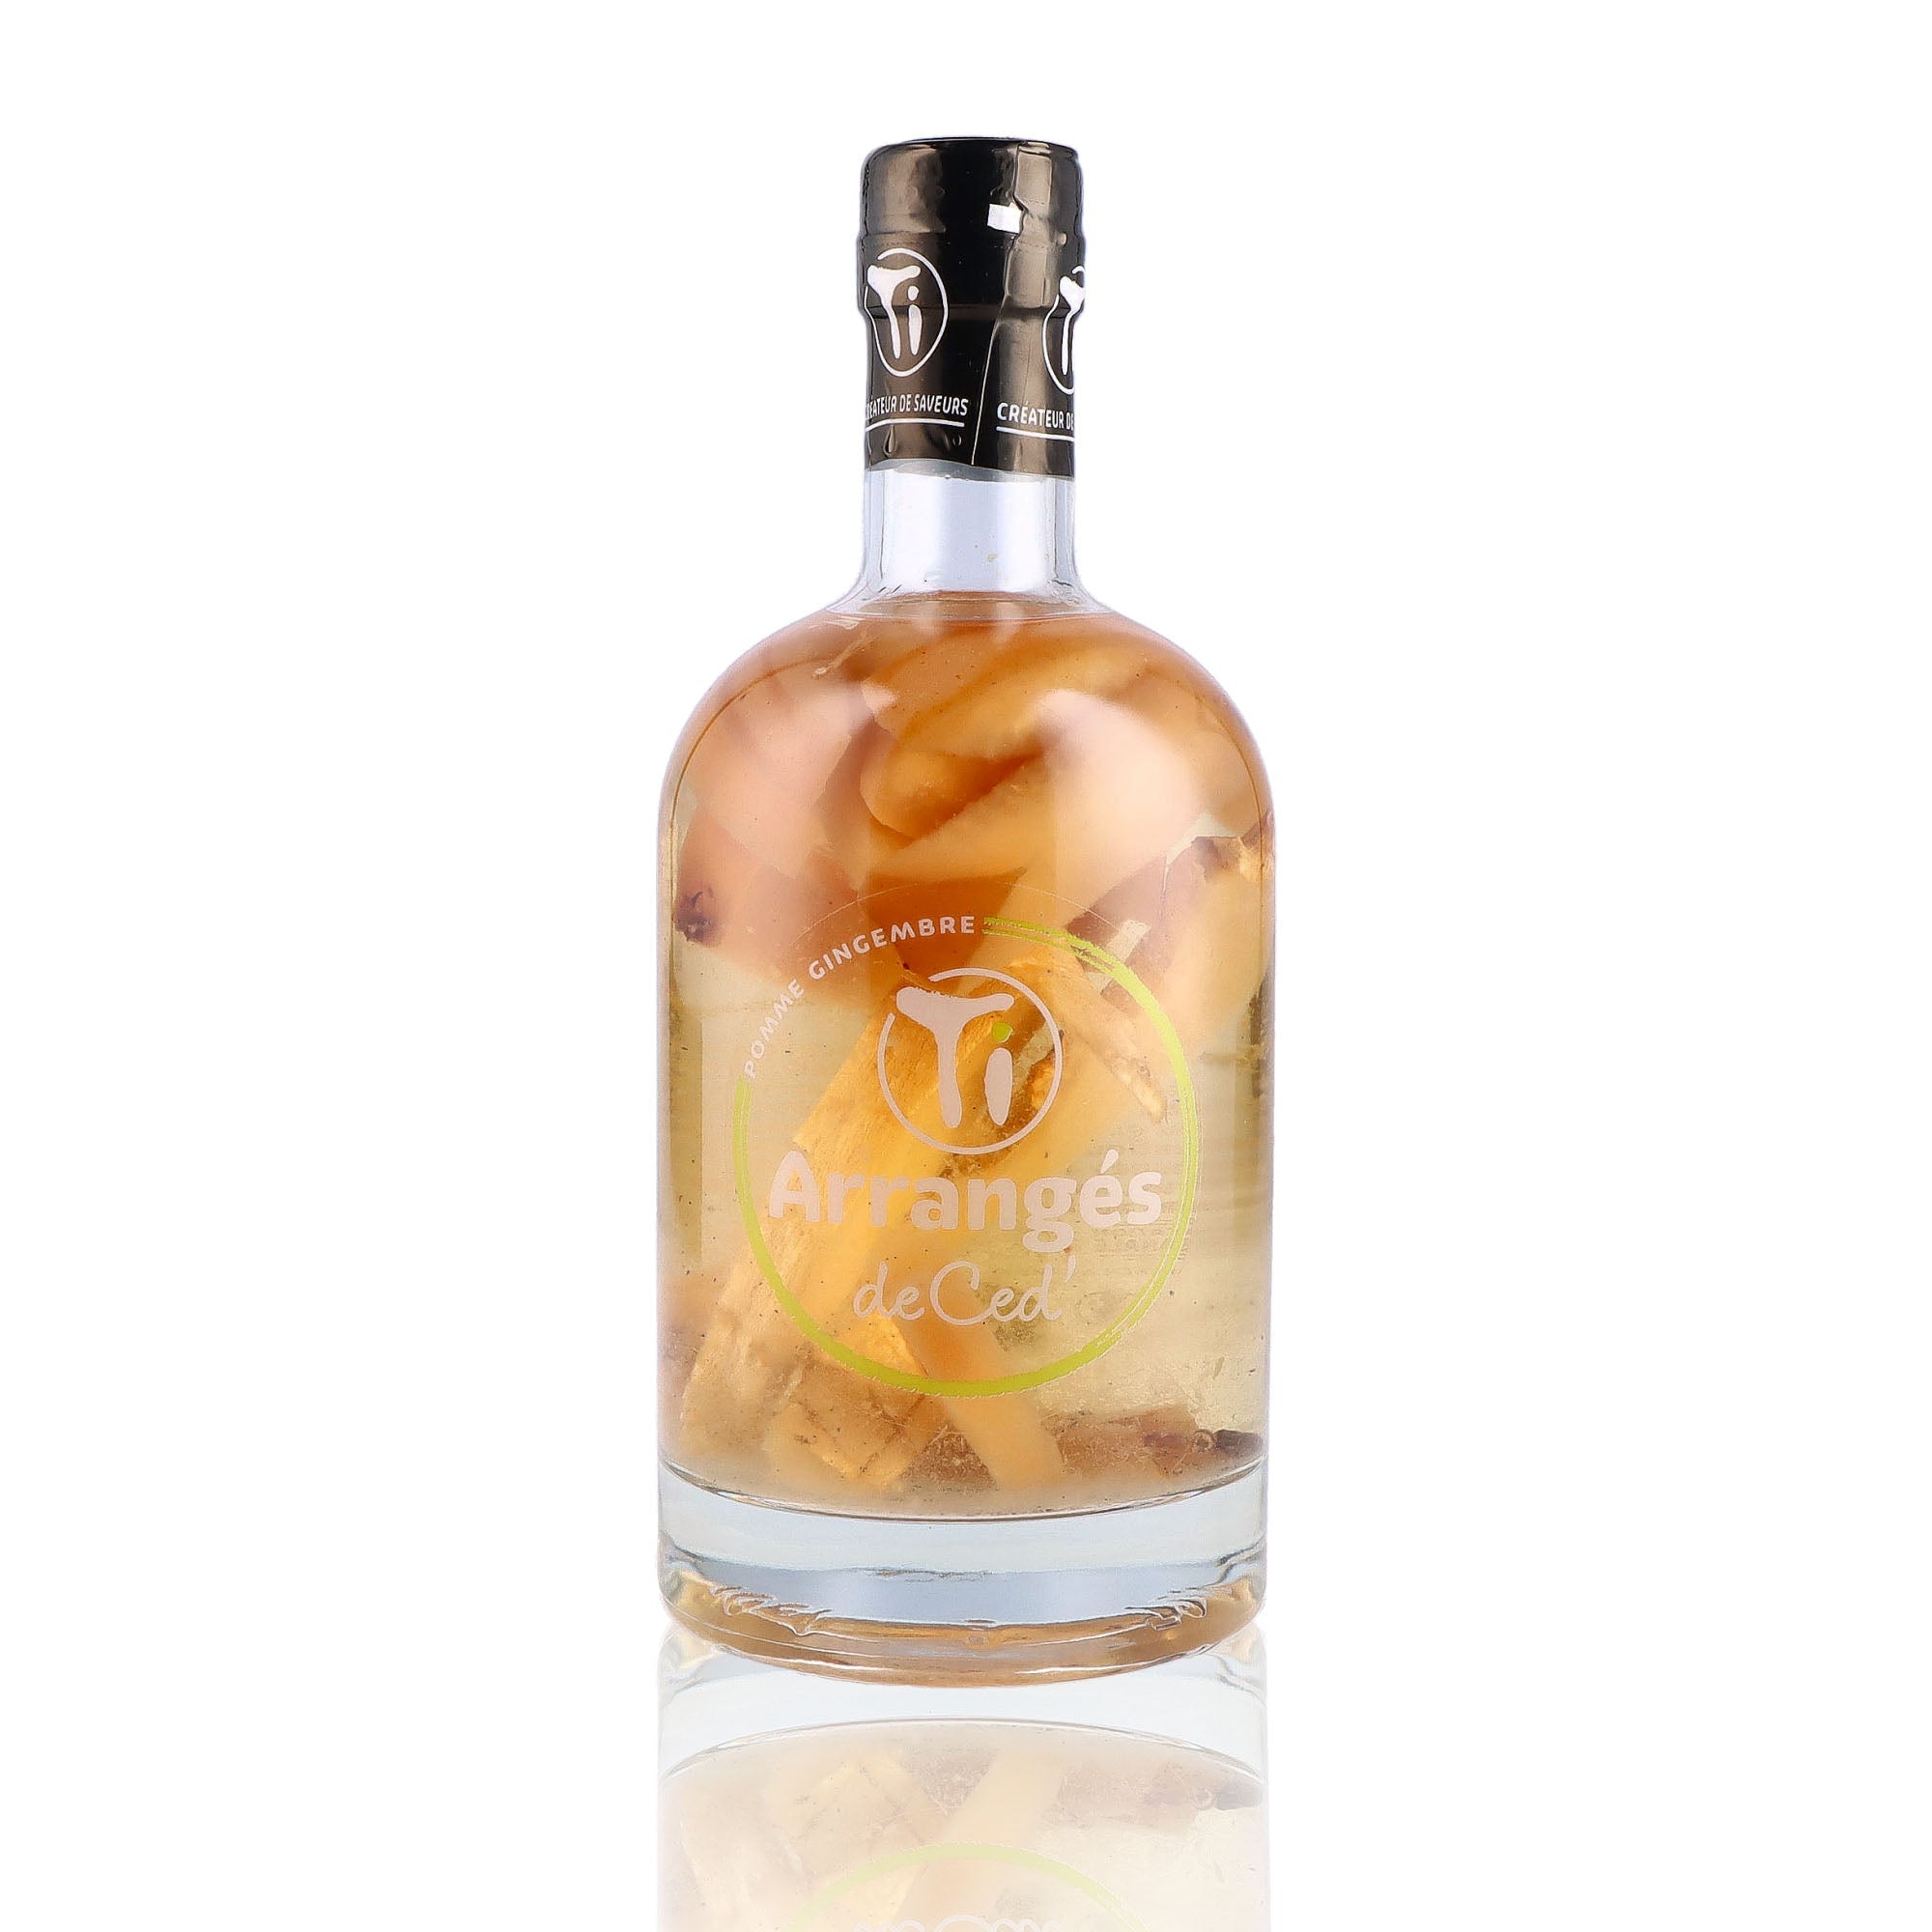 Une bouteille de Rhum Arrangé, de la marque Les Rhums de Ced', nommée TI Arrangés Pomme Gingembre.